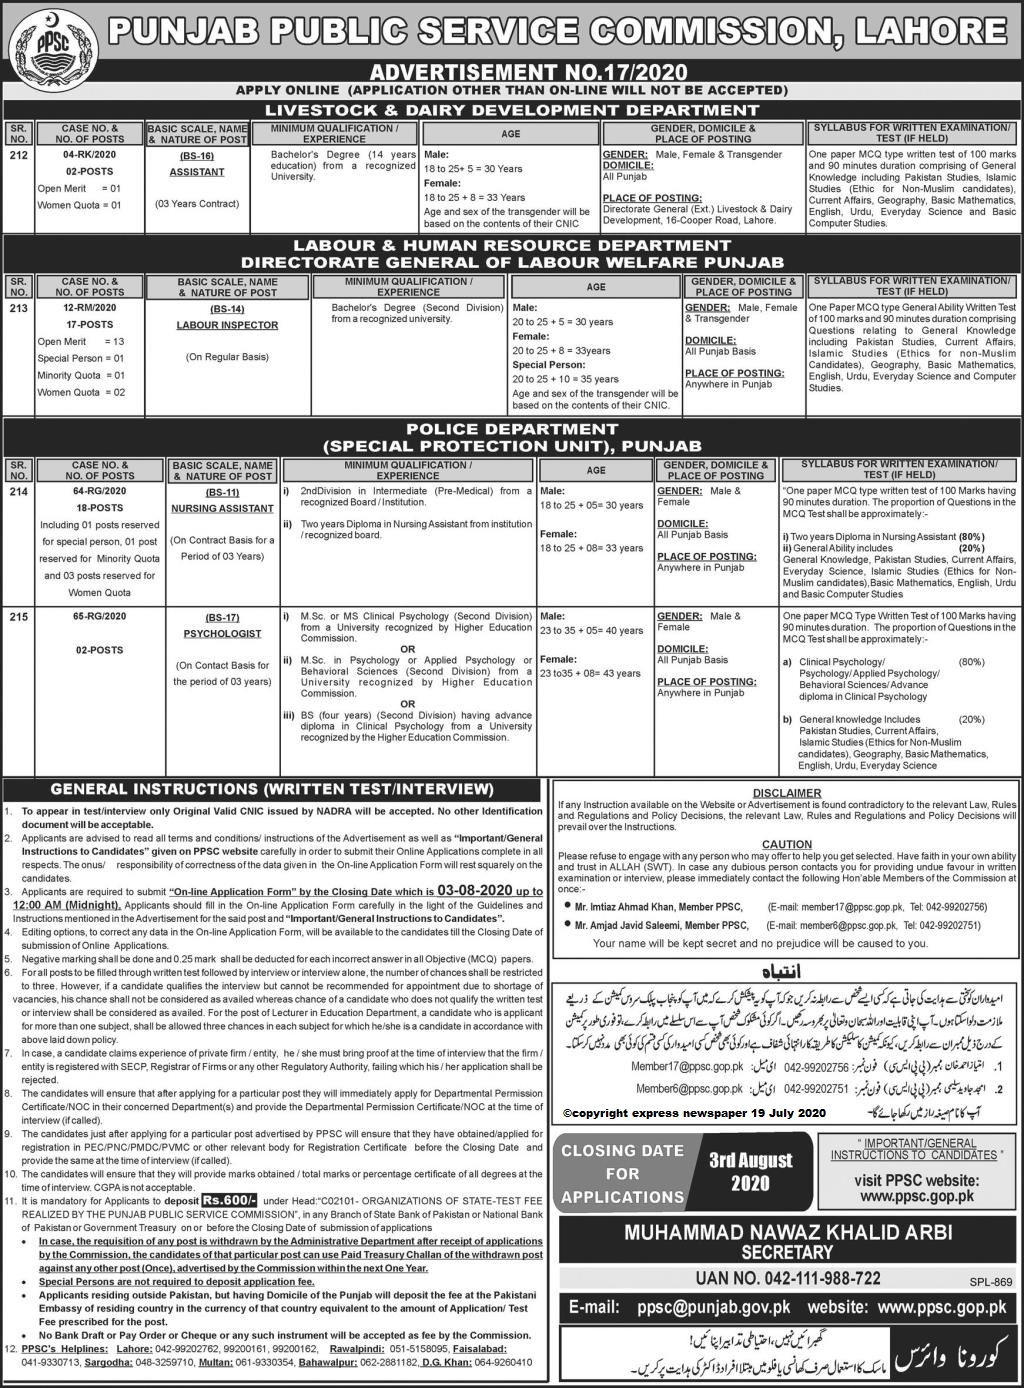 Punjab Public Service Commission Ppsc Latest Jobs Latest Vacancies Announced